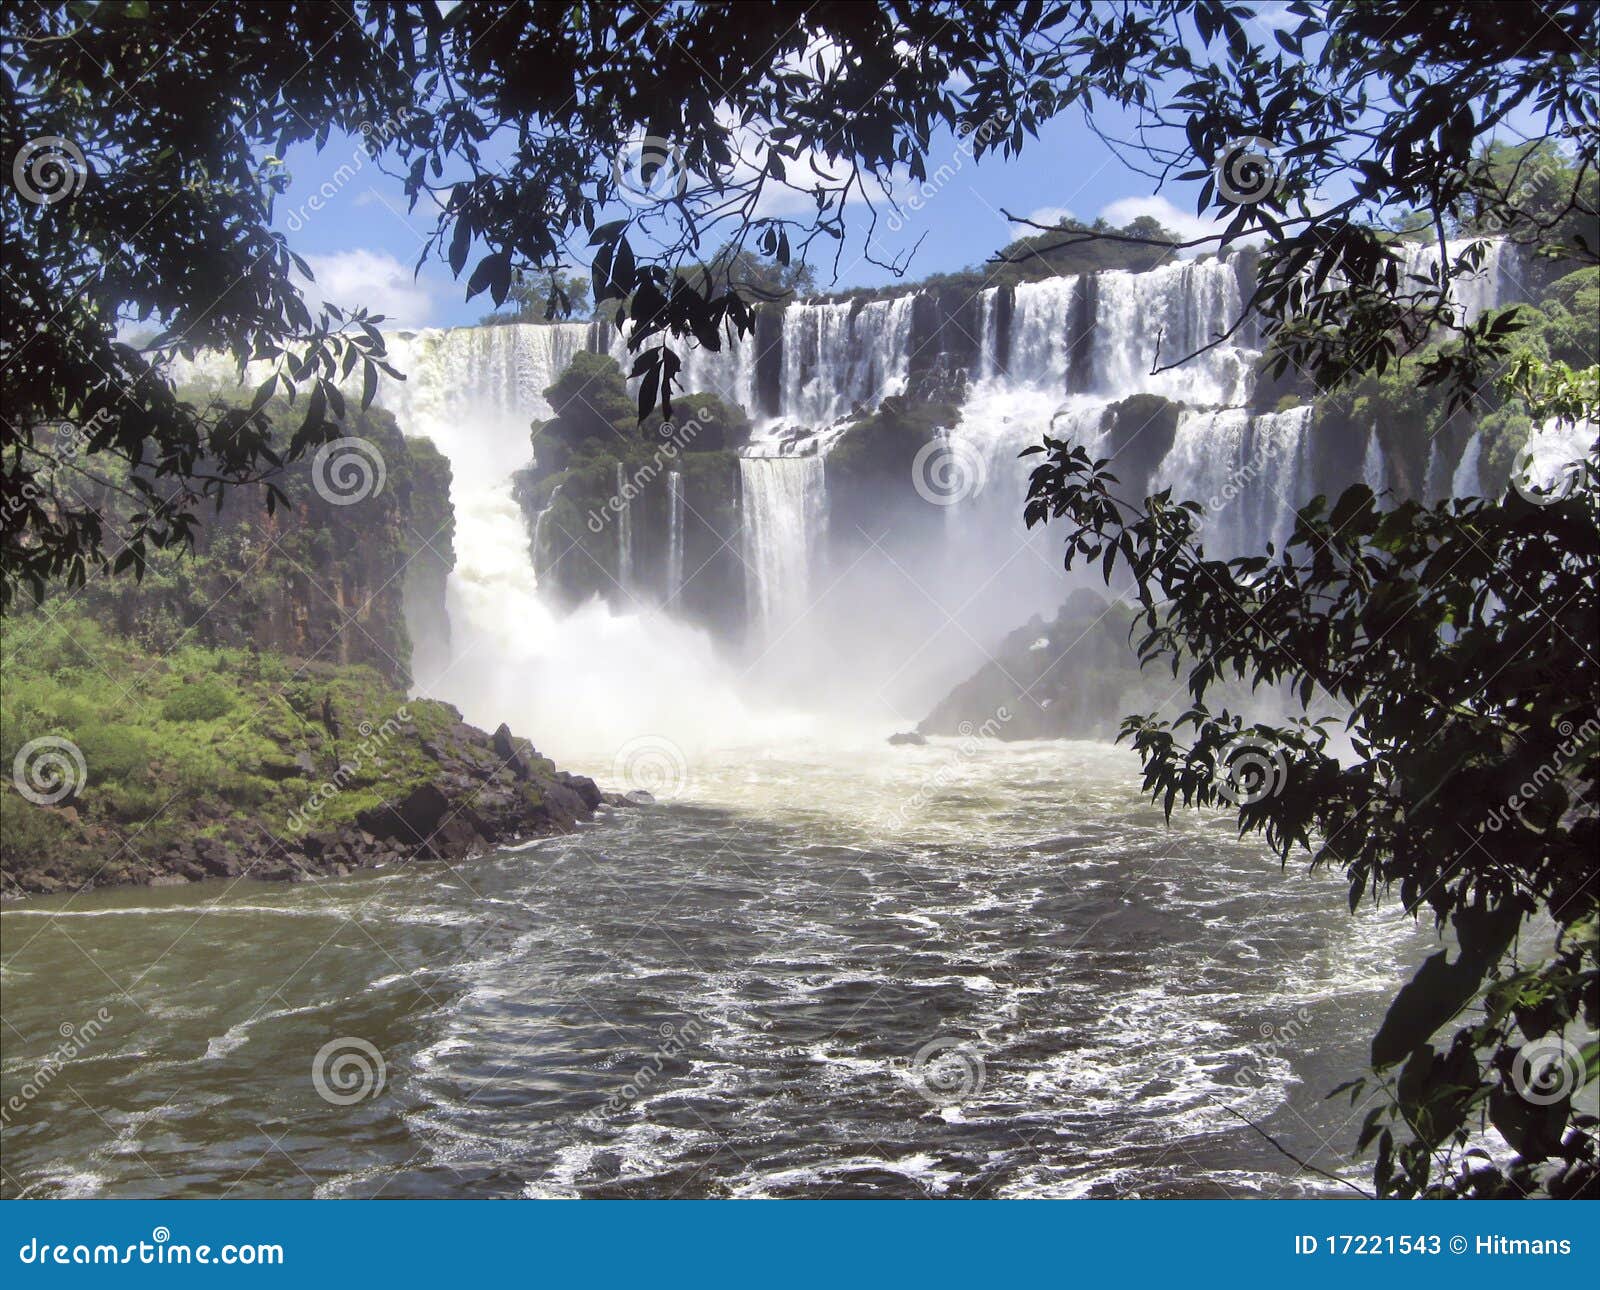 iguassu waterfalls in brazil argentina border